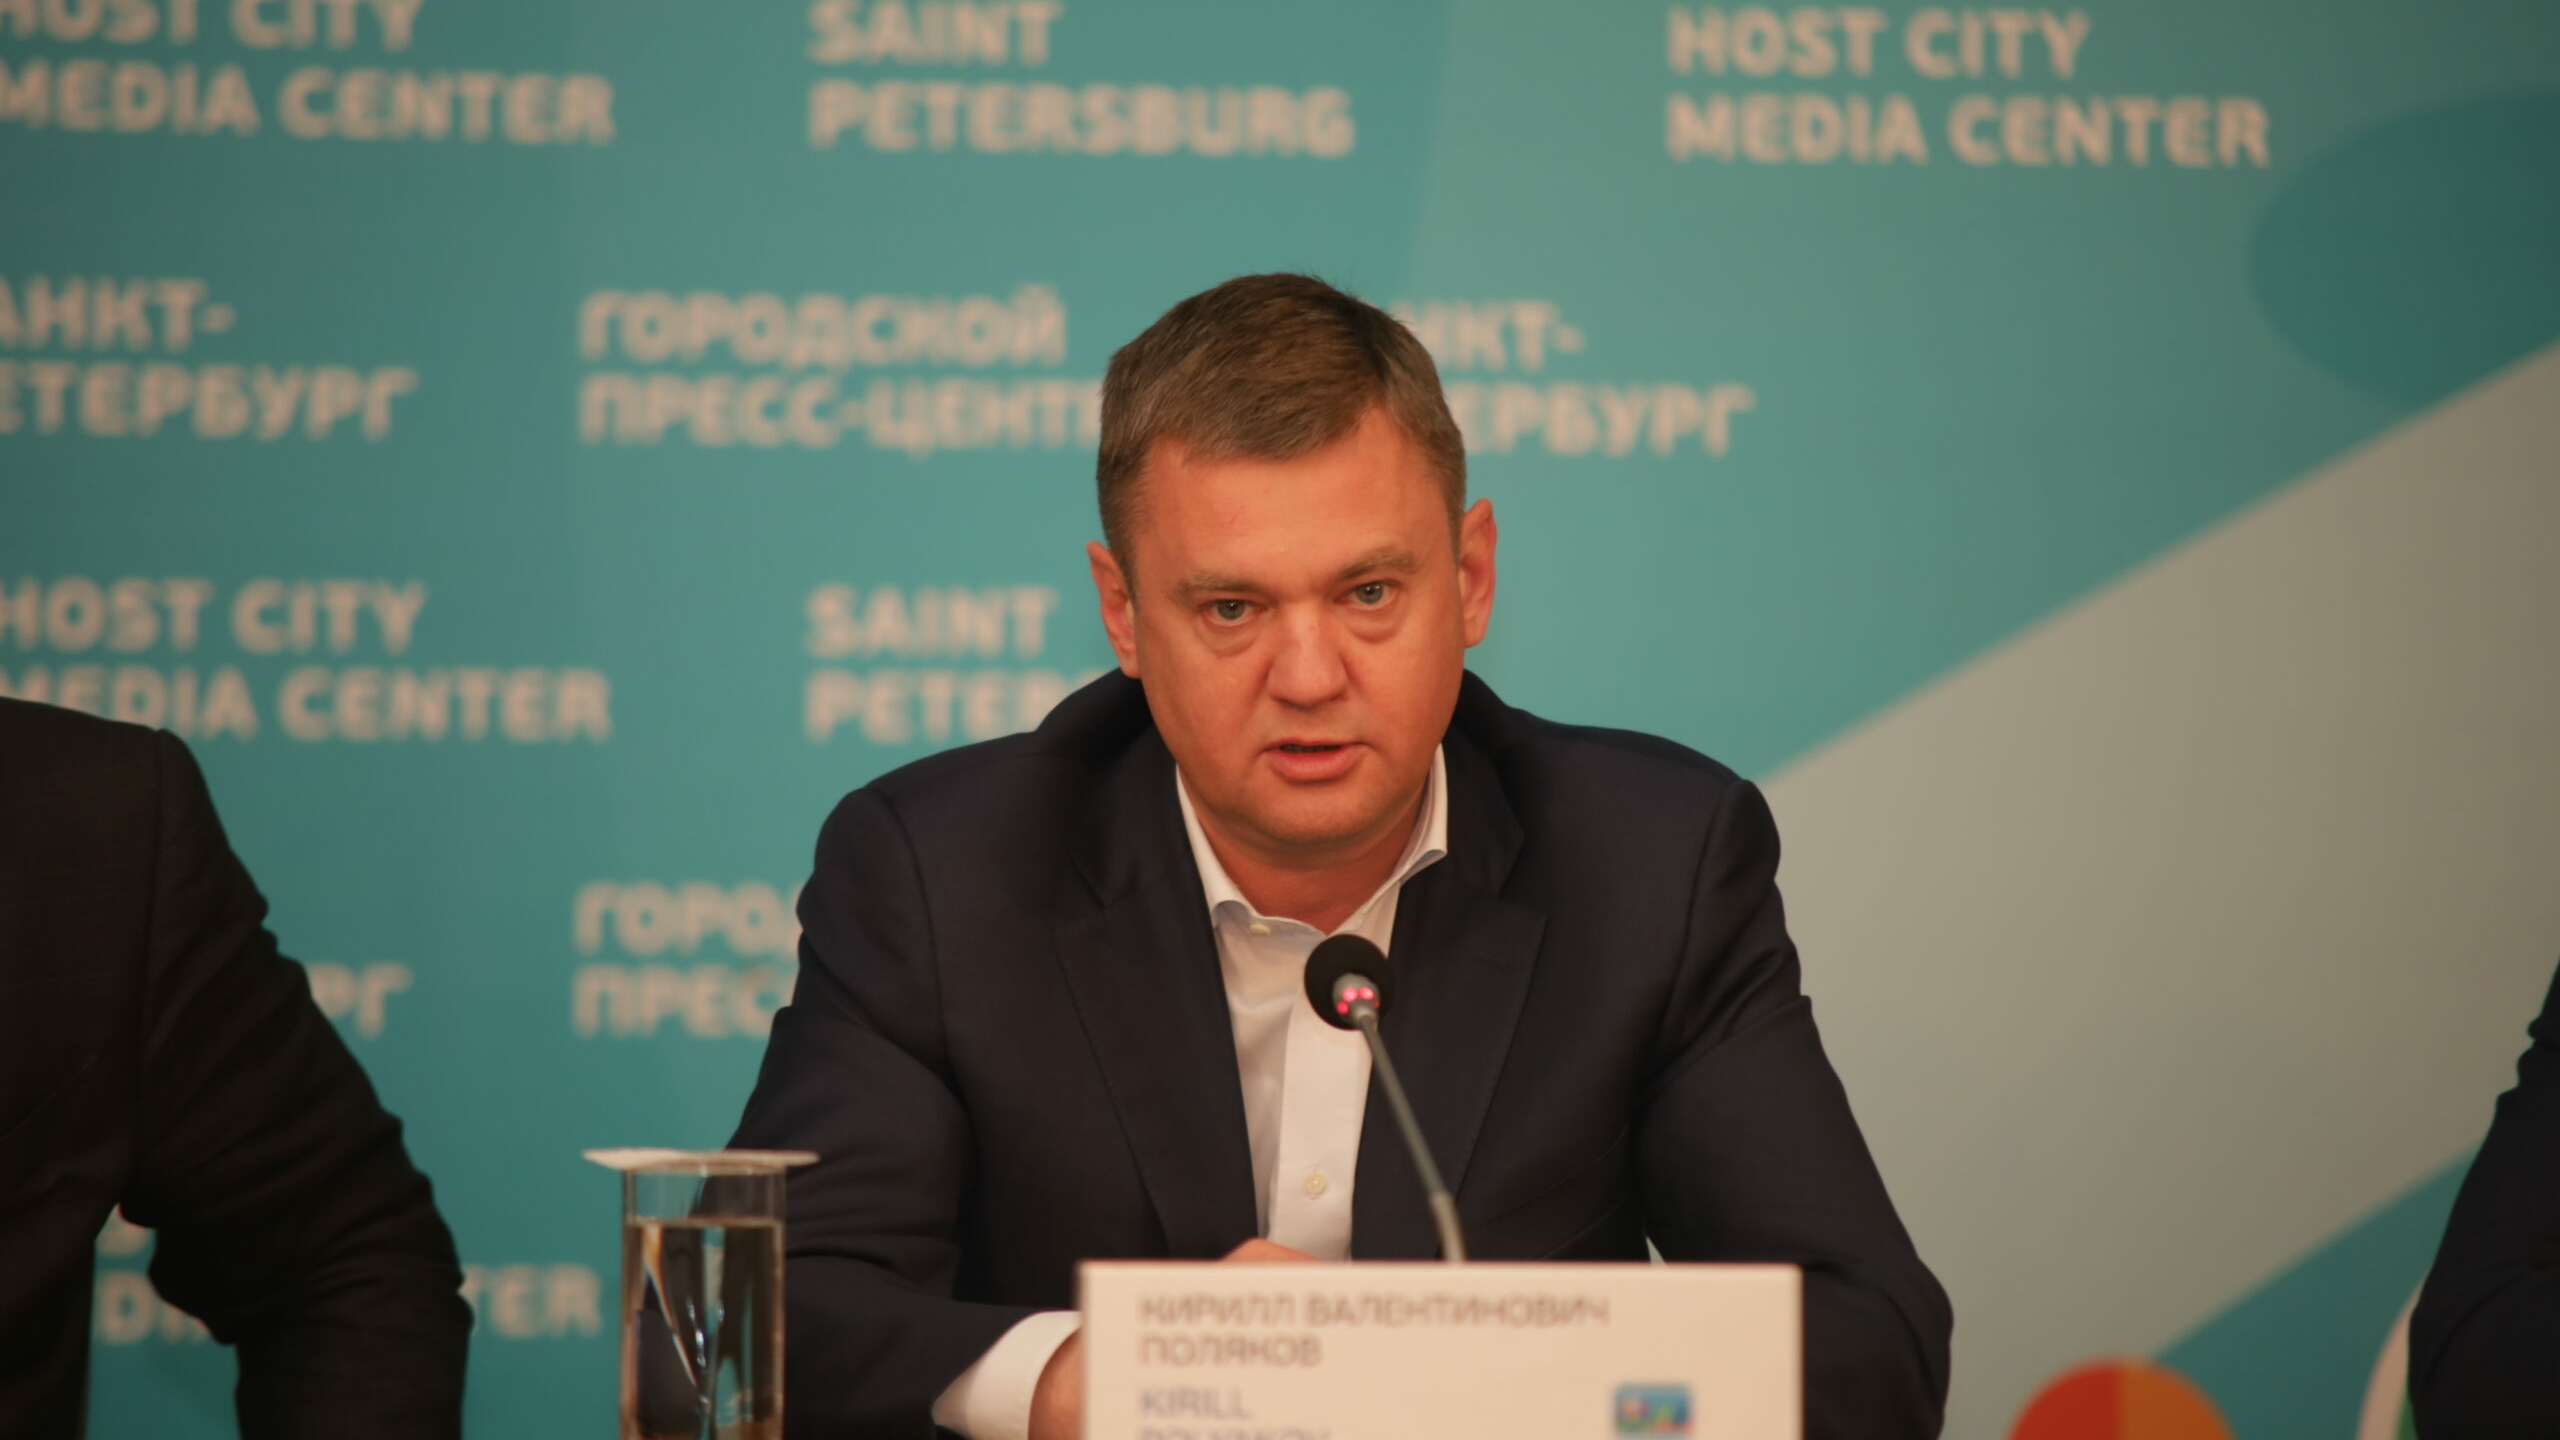 Вице-губернатор Поляков рассказал, какие компании смогут получить «промышленную ипотеку» в Петербурге